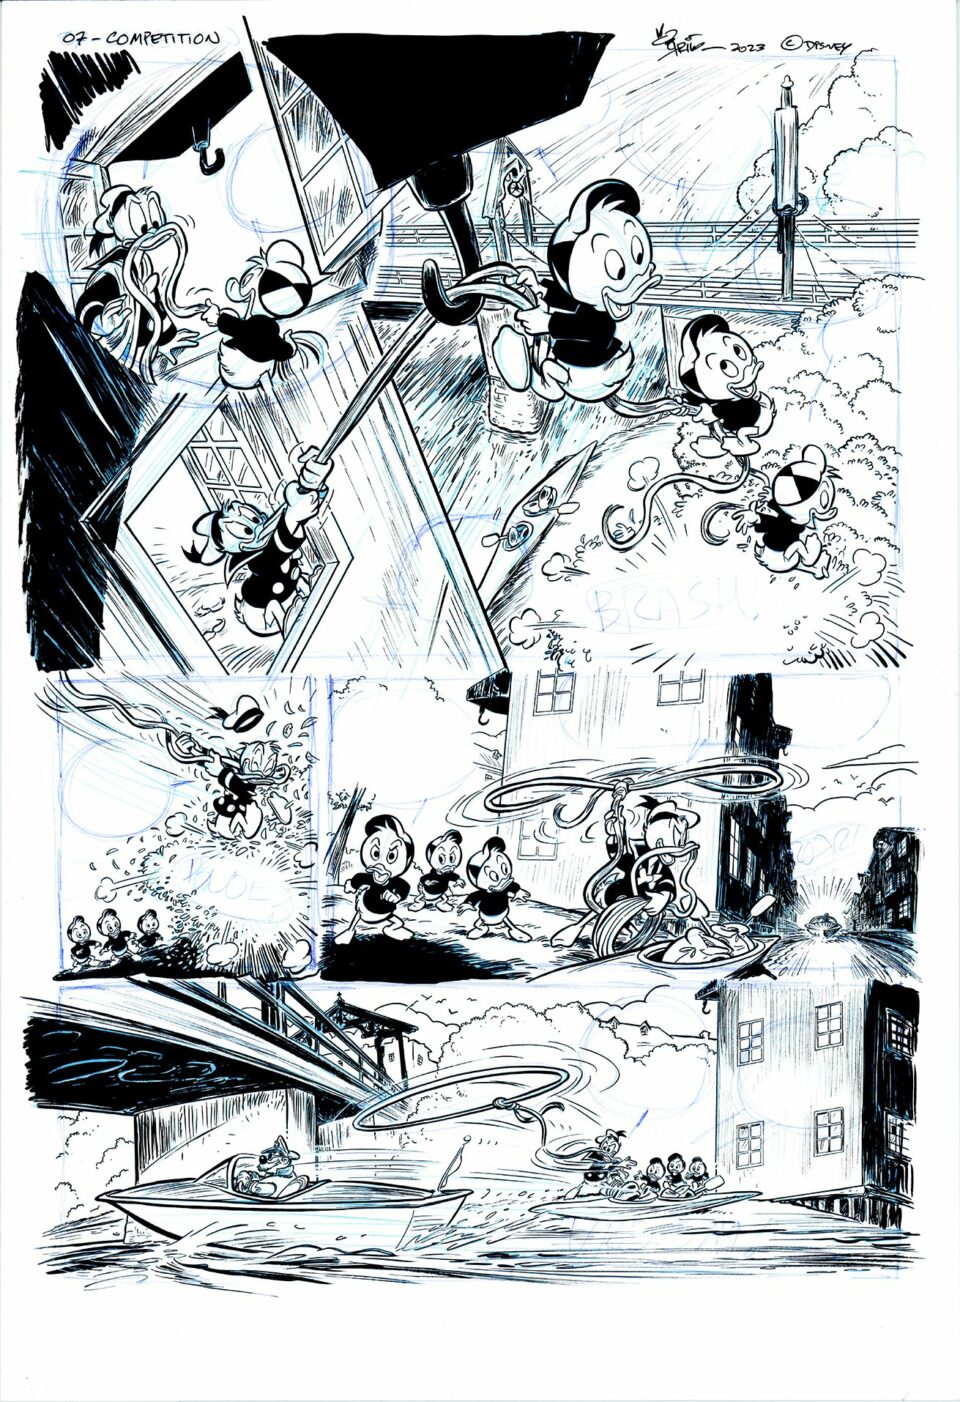 Tegneserieside med mickey mouse i forskjellige paneler, som viser dynamiske handlinger som å henge fra en paraply, kjøre bil og samhandle med andre karakterer i lunefulle omgivelser.